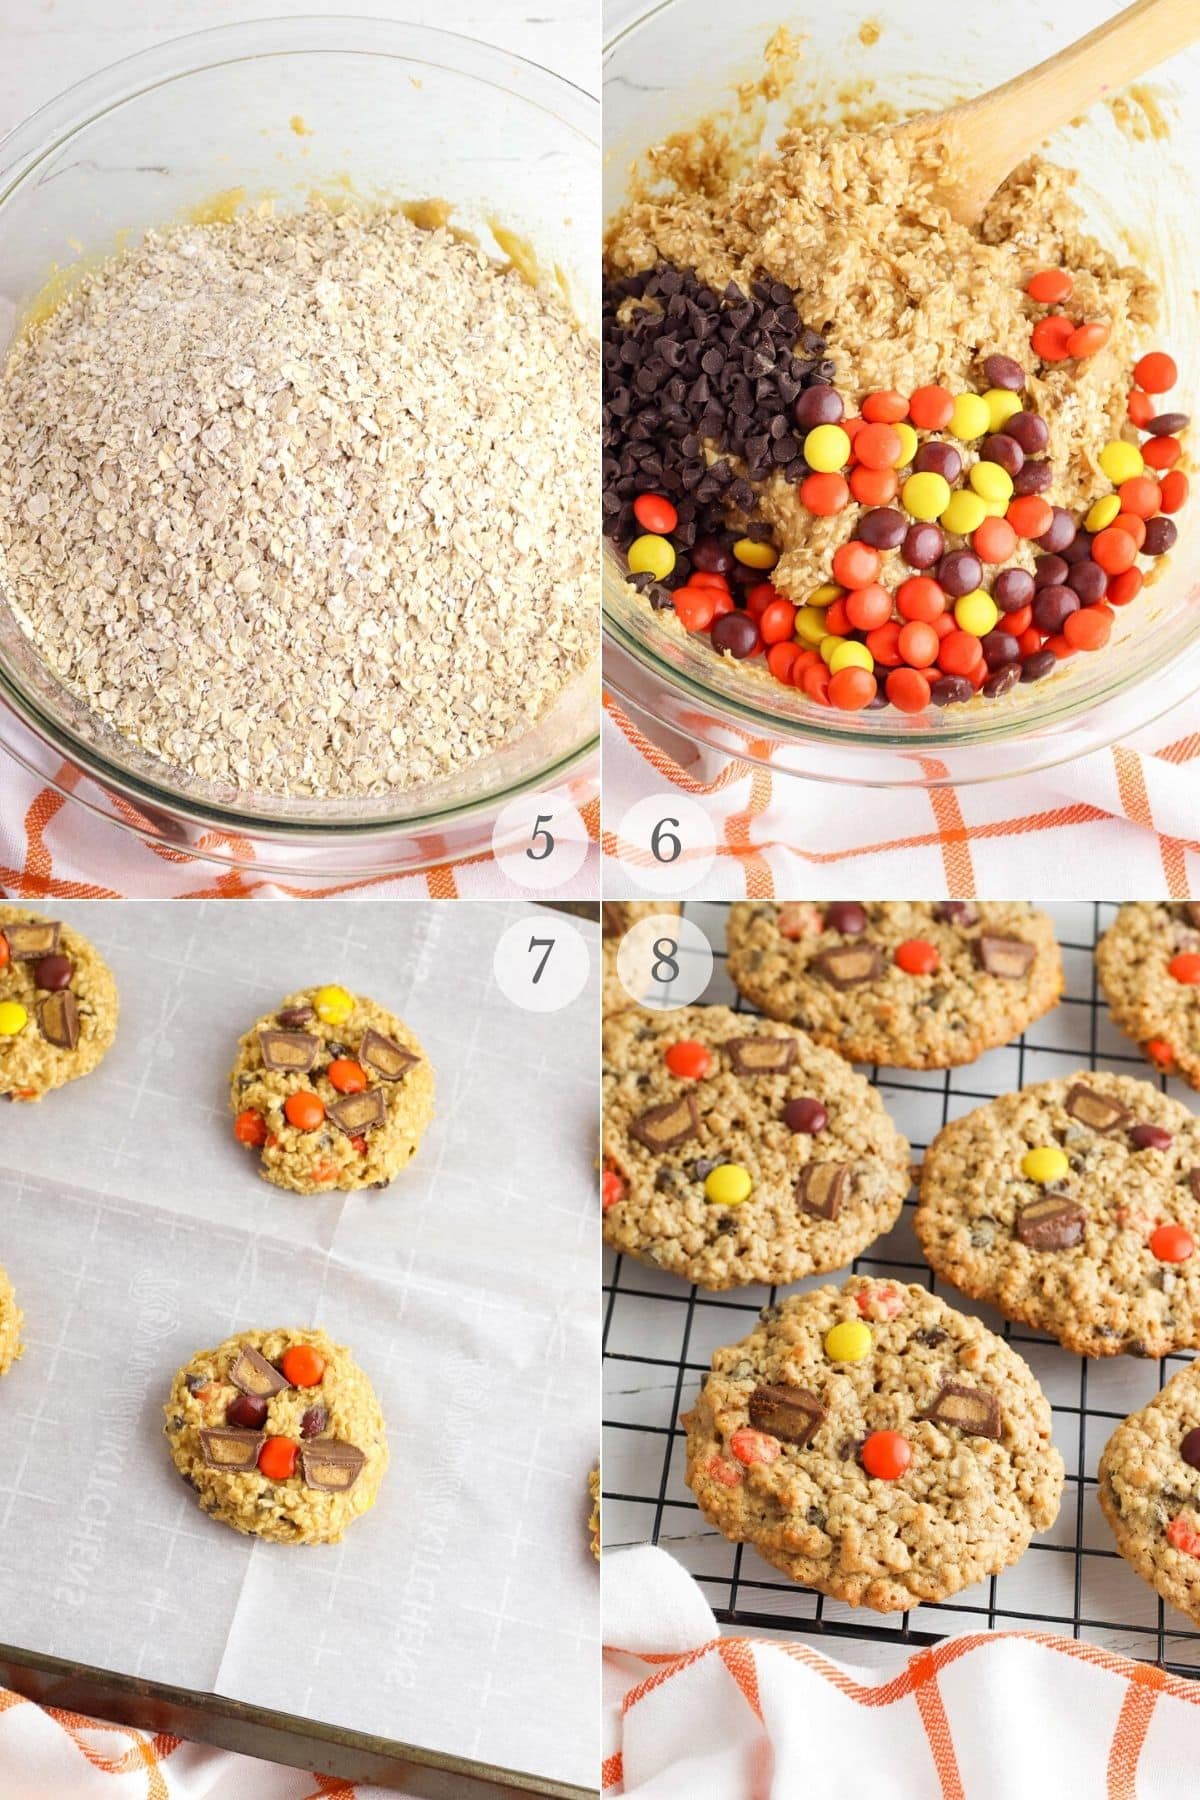 reese's cookies recipe steps 5-8